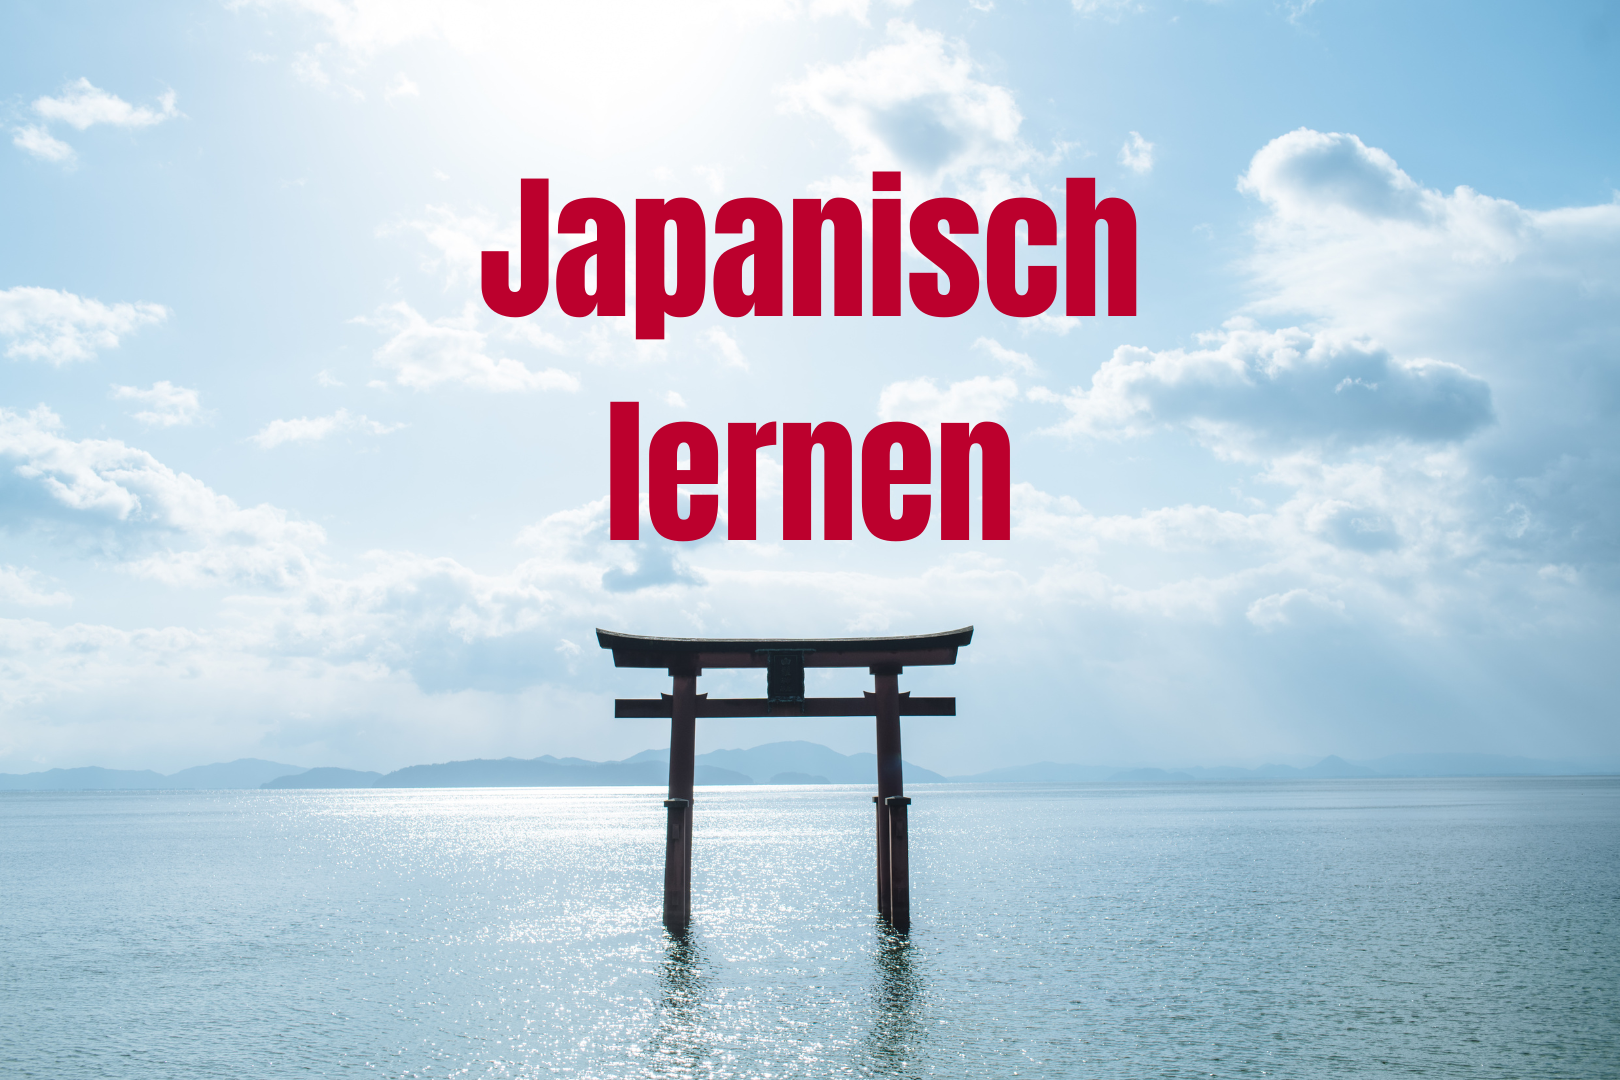 Ein japanischer Tempel (Torii) im Wasser. Darüber steht: "Japanisch lernen"